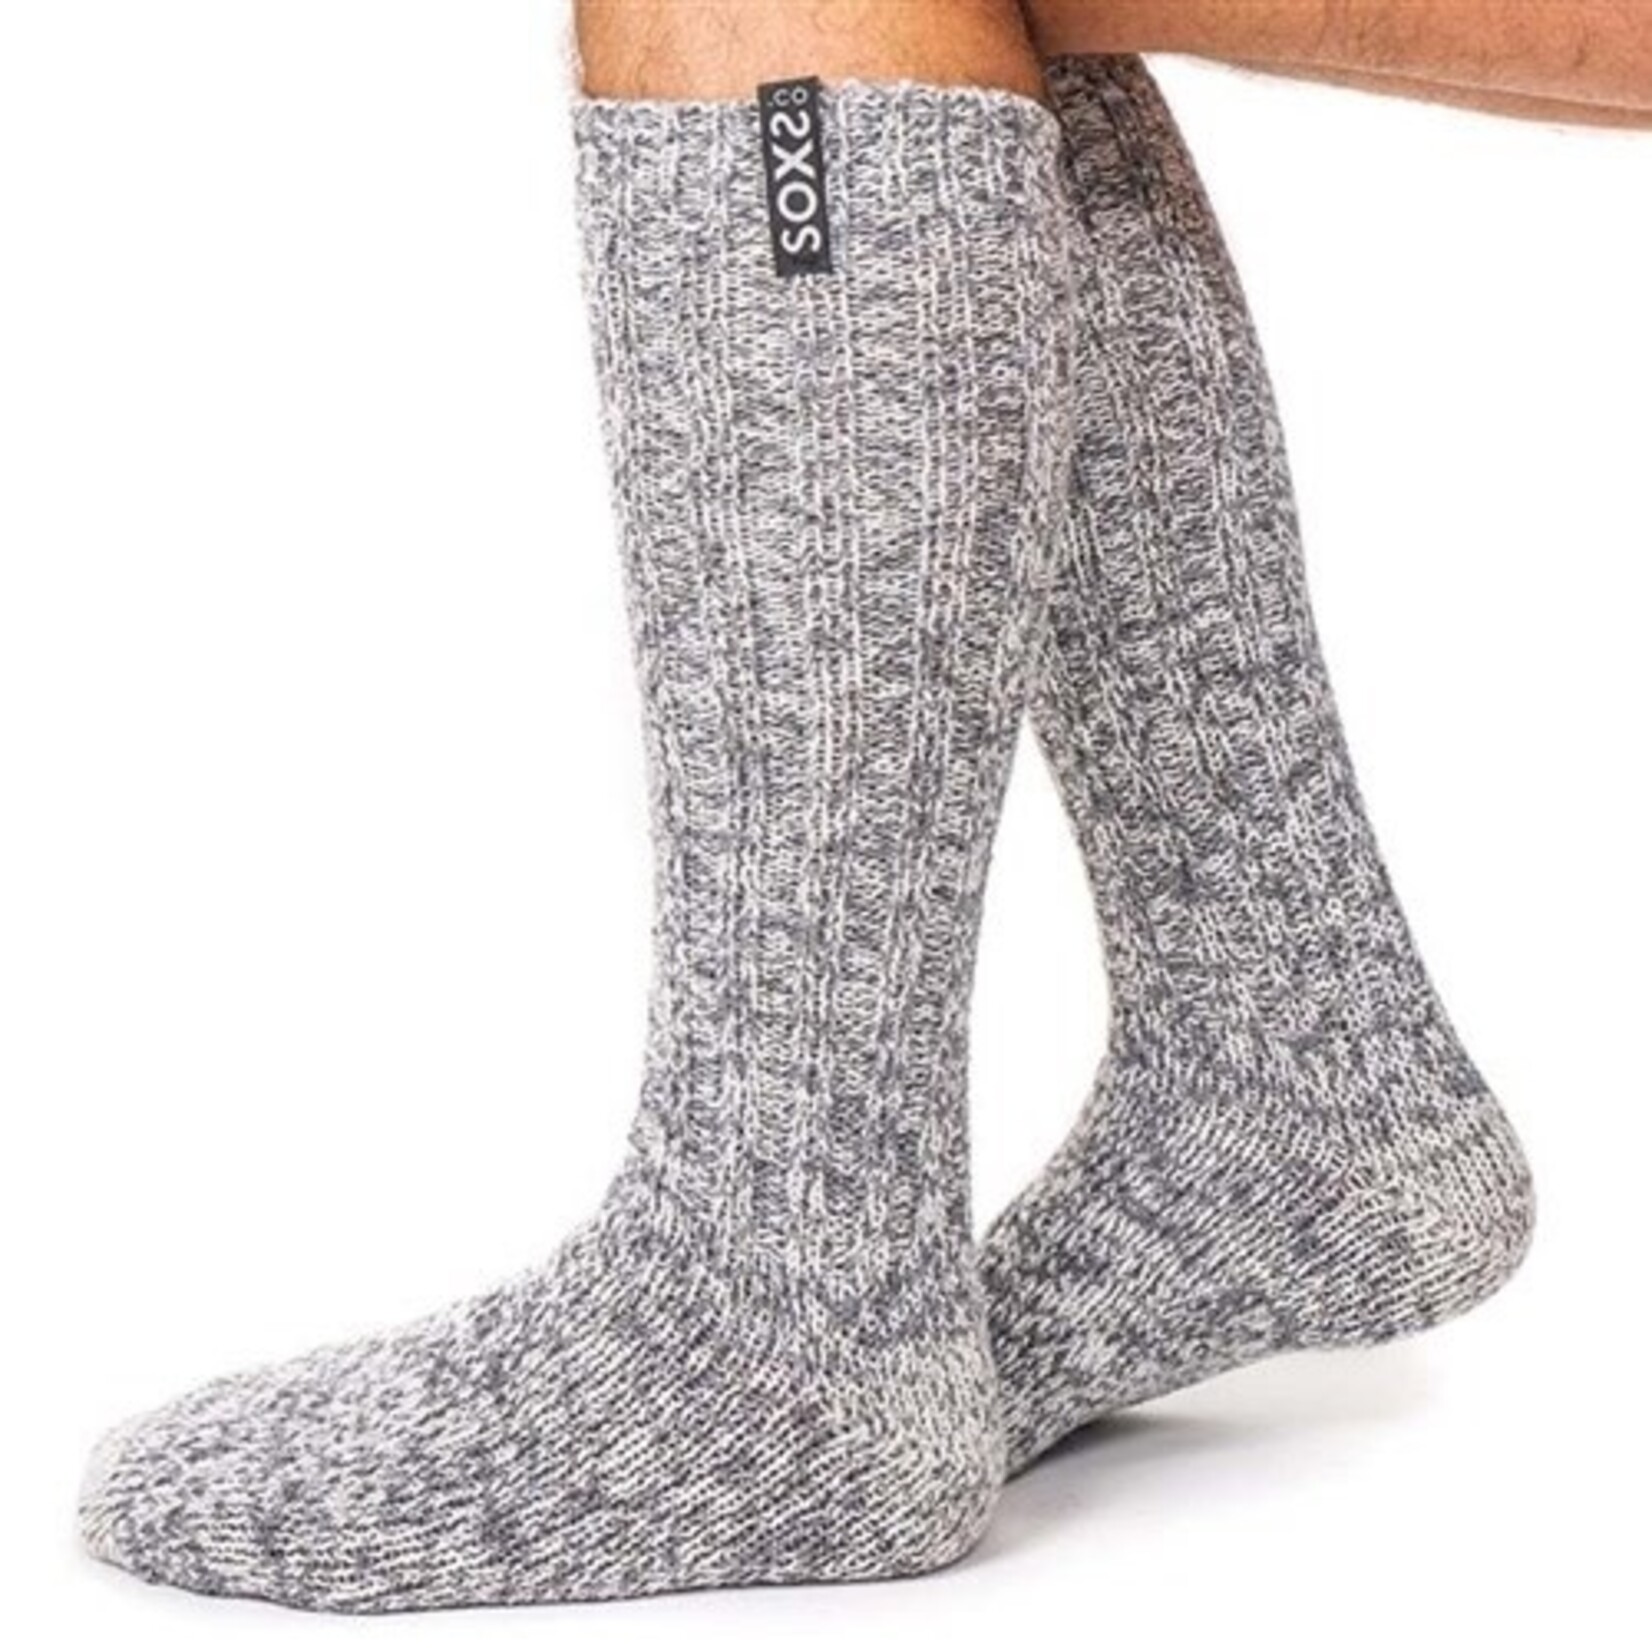 mannen long grey/ black  maat 39 - 41 sokken